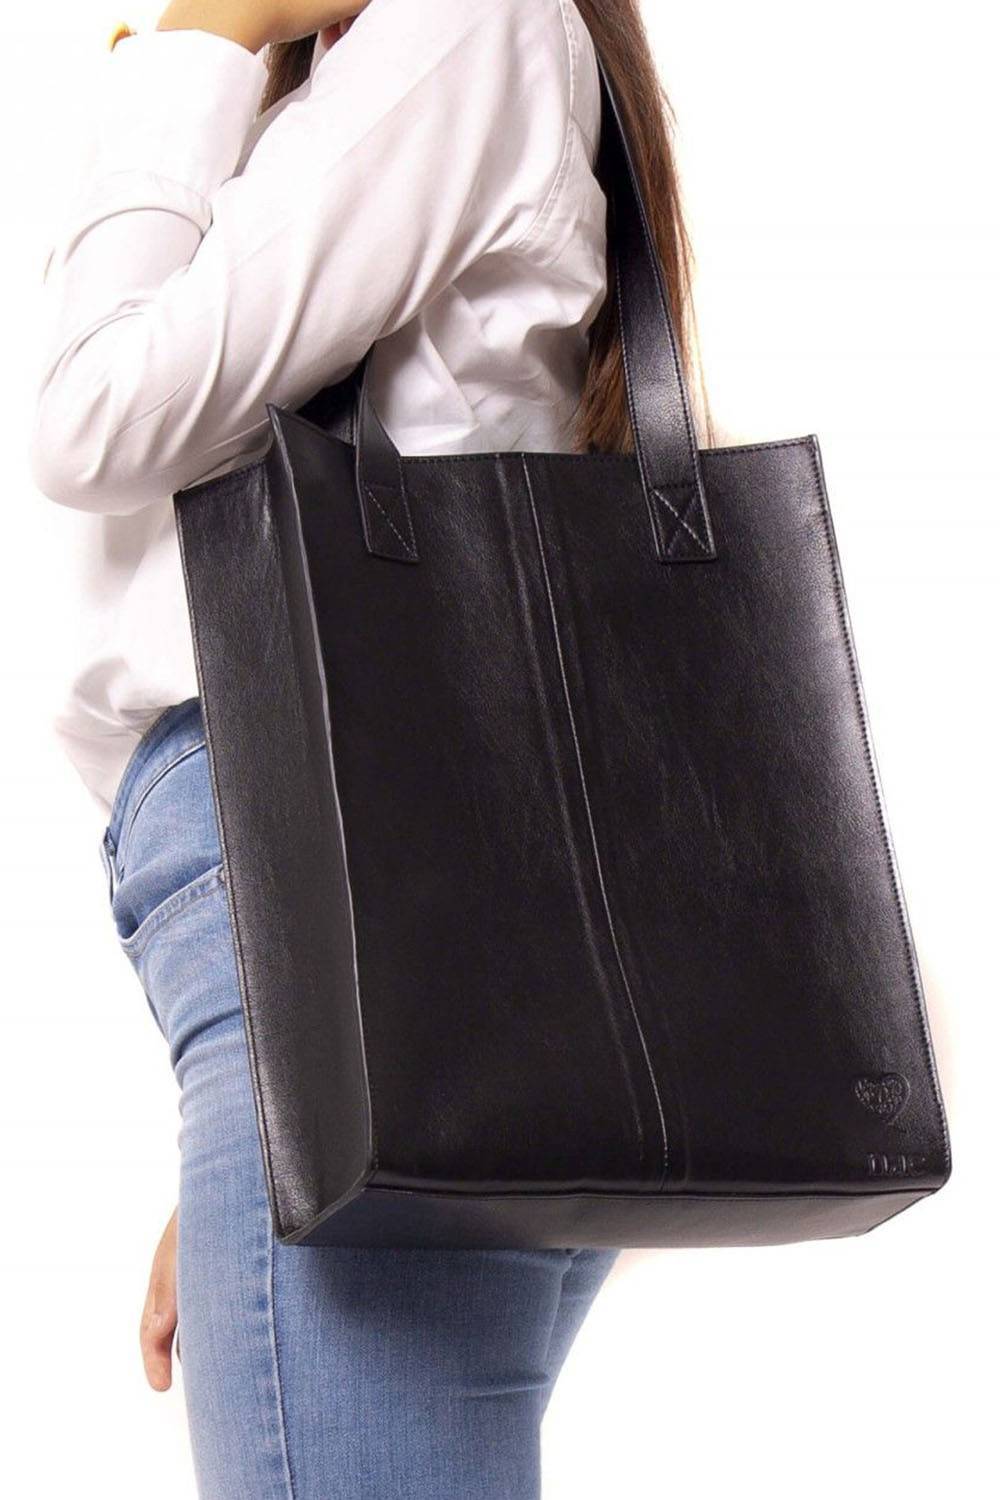 nae vegan faux leather handbag